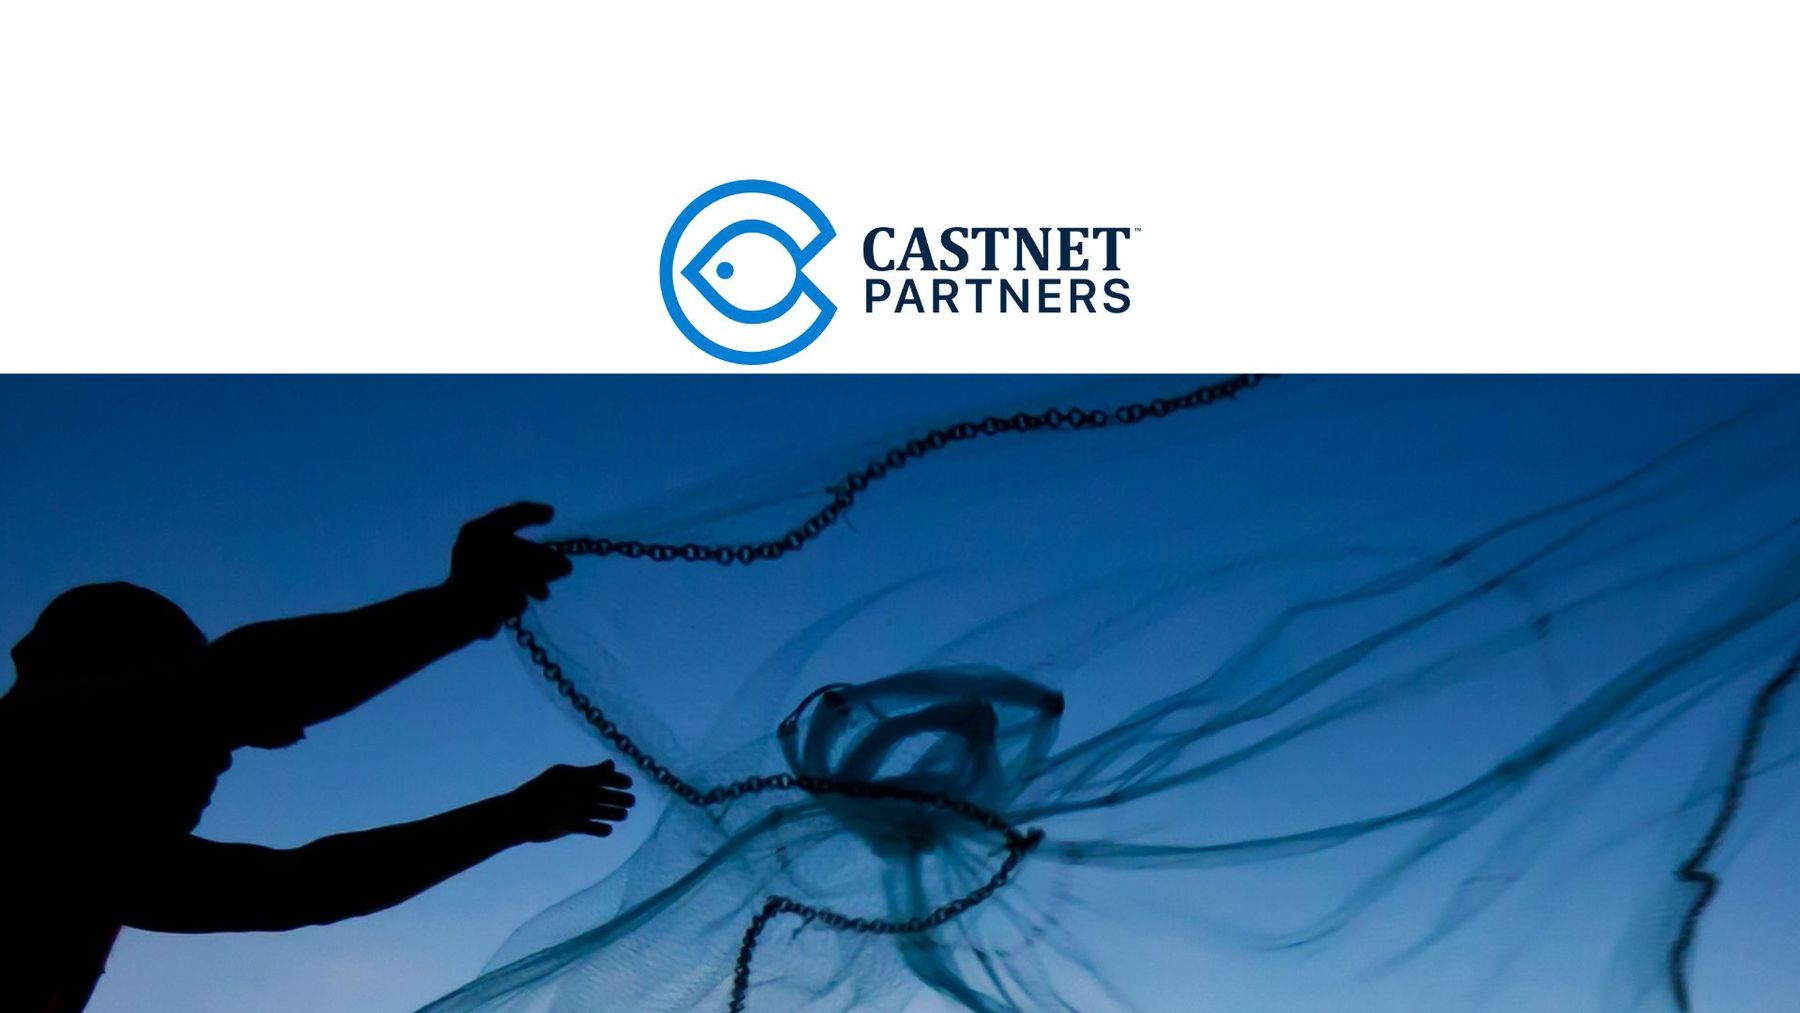 CastNet Partners - About